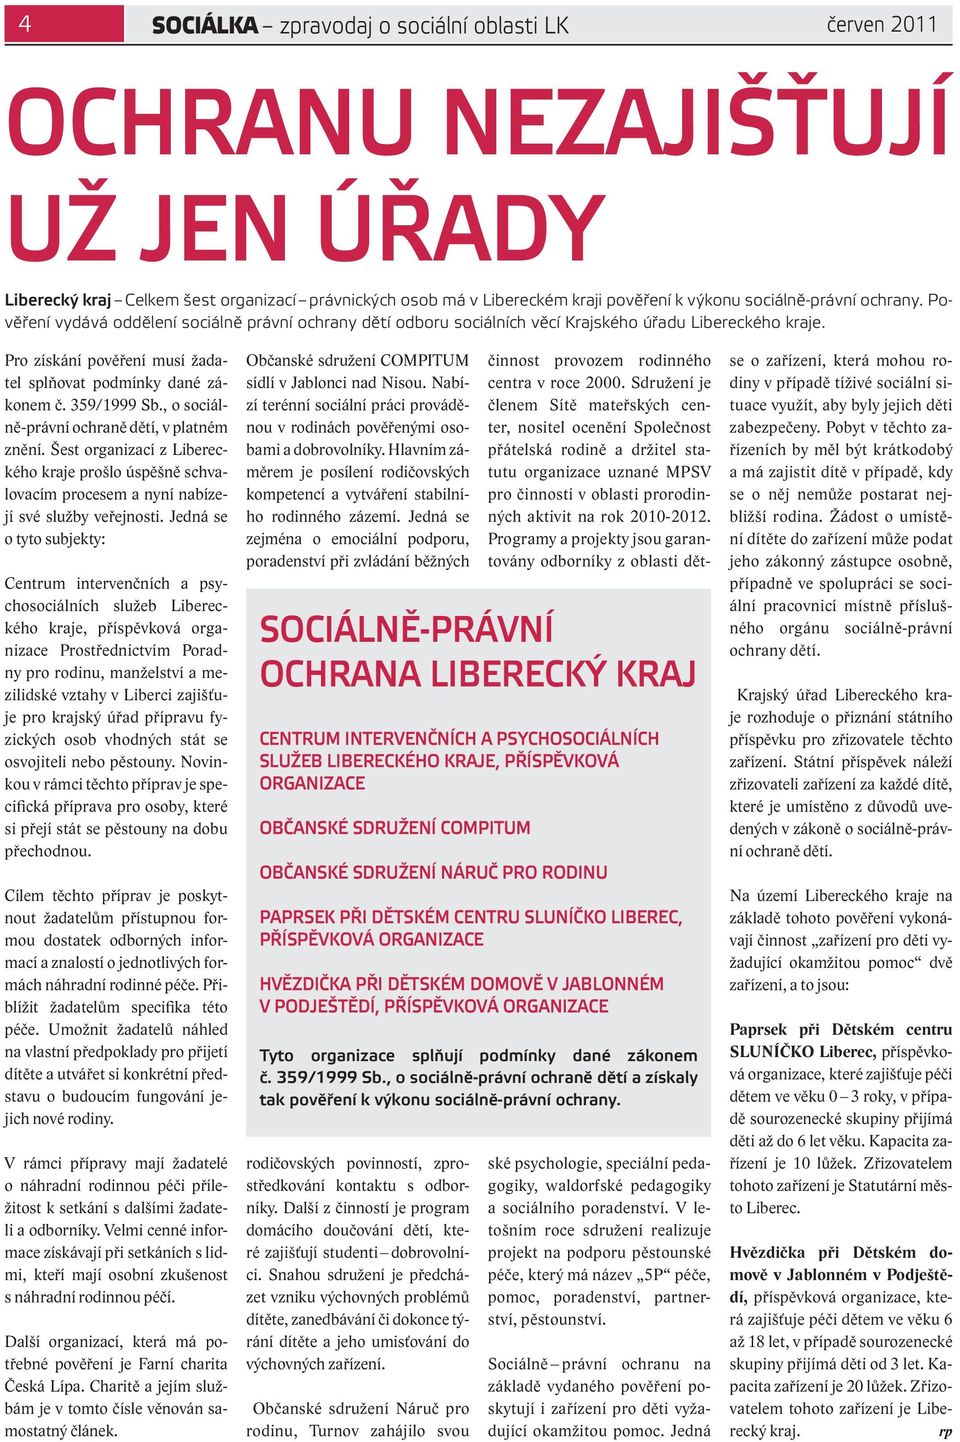 359/1999 Sb., o sociálně-právní ochraně dětí, v platném znění. Šest organizací z Libereckého kraje prošlo úspěšně schvalovacím procesem a nyní nabízejí své služby veřejnosti.